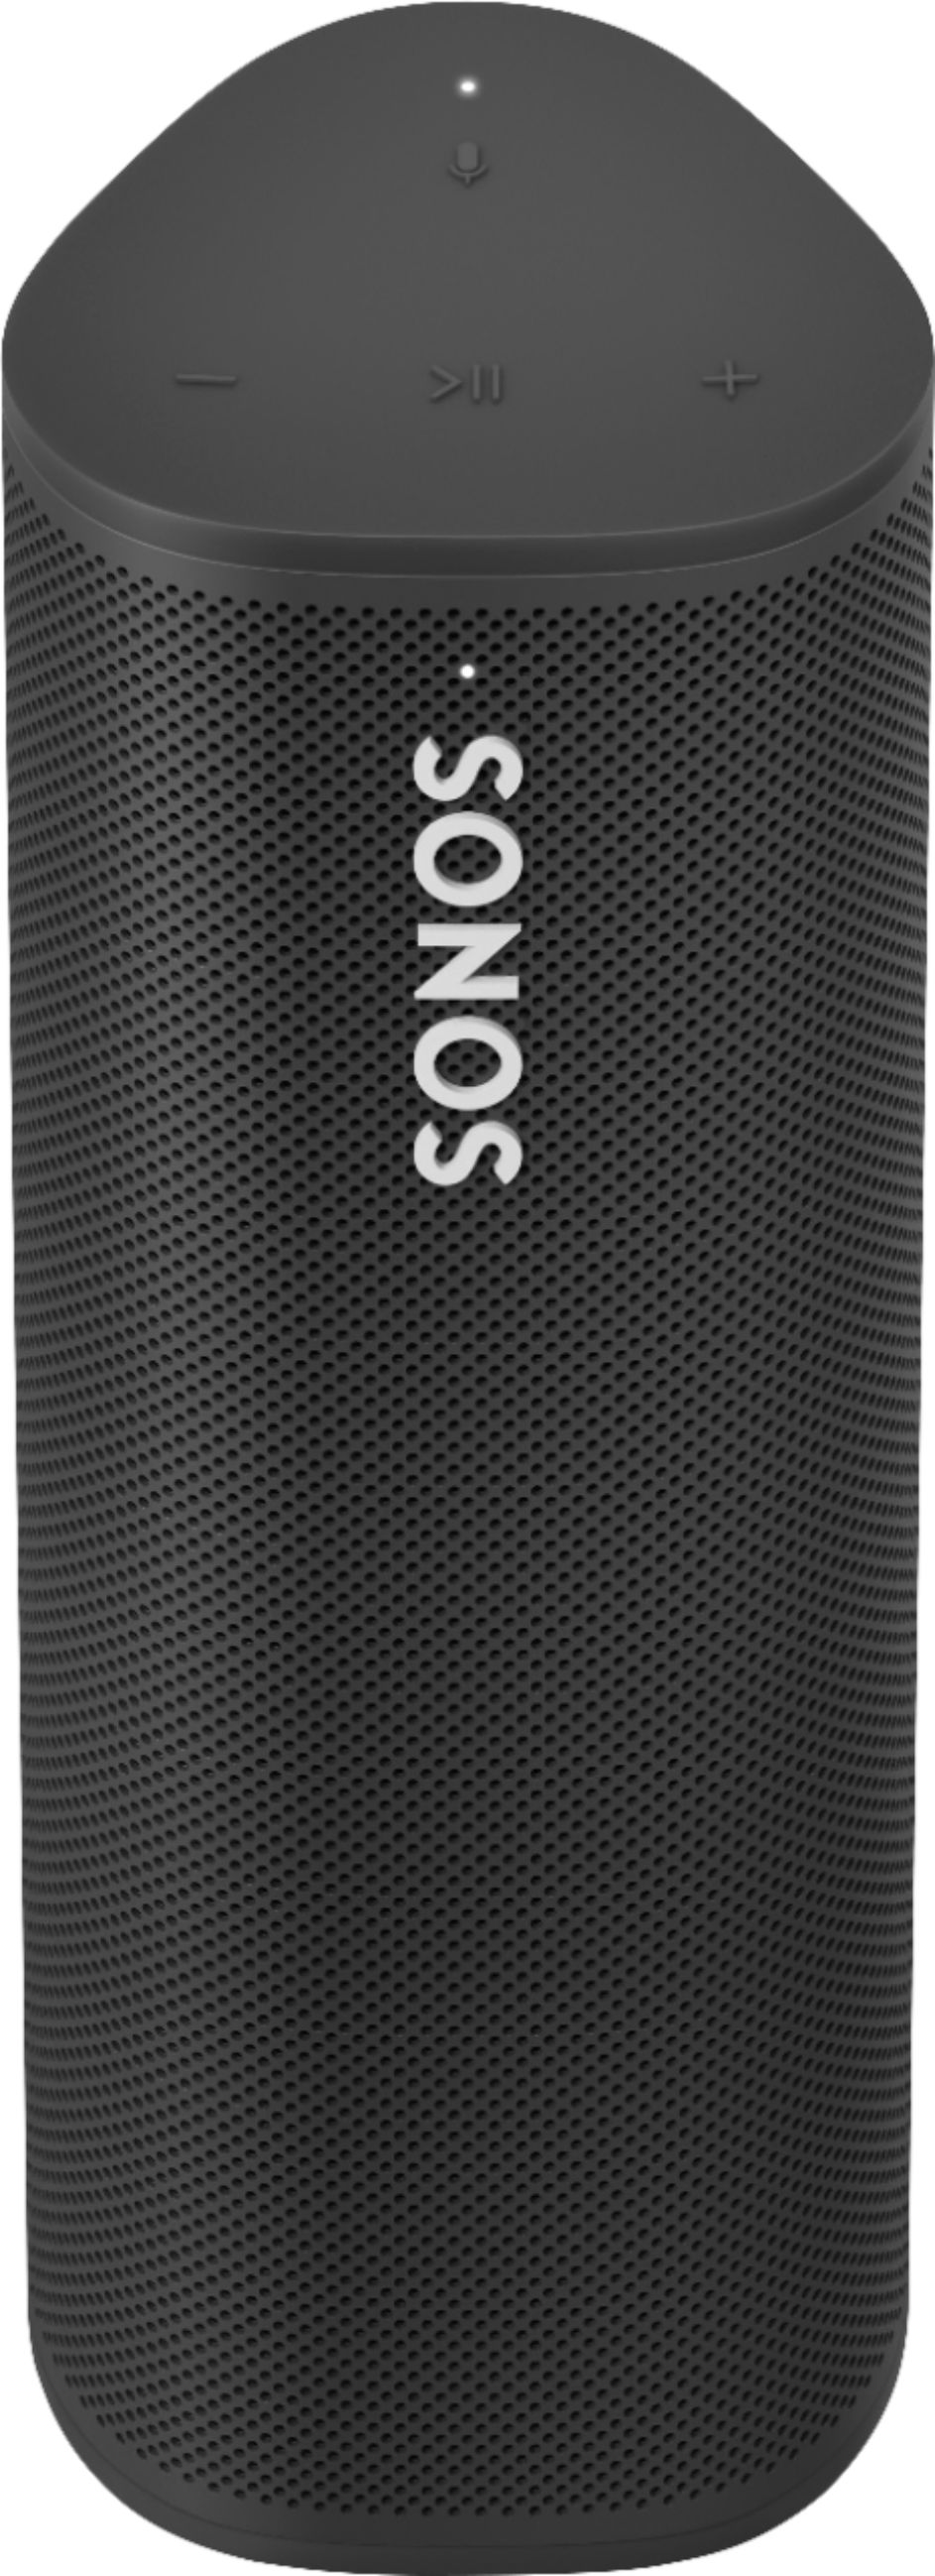 Best Buy Sonos Geek Squad Certified Refurbished Roam Smart Portable Wi